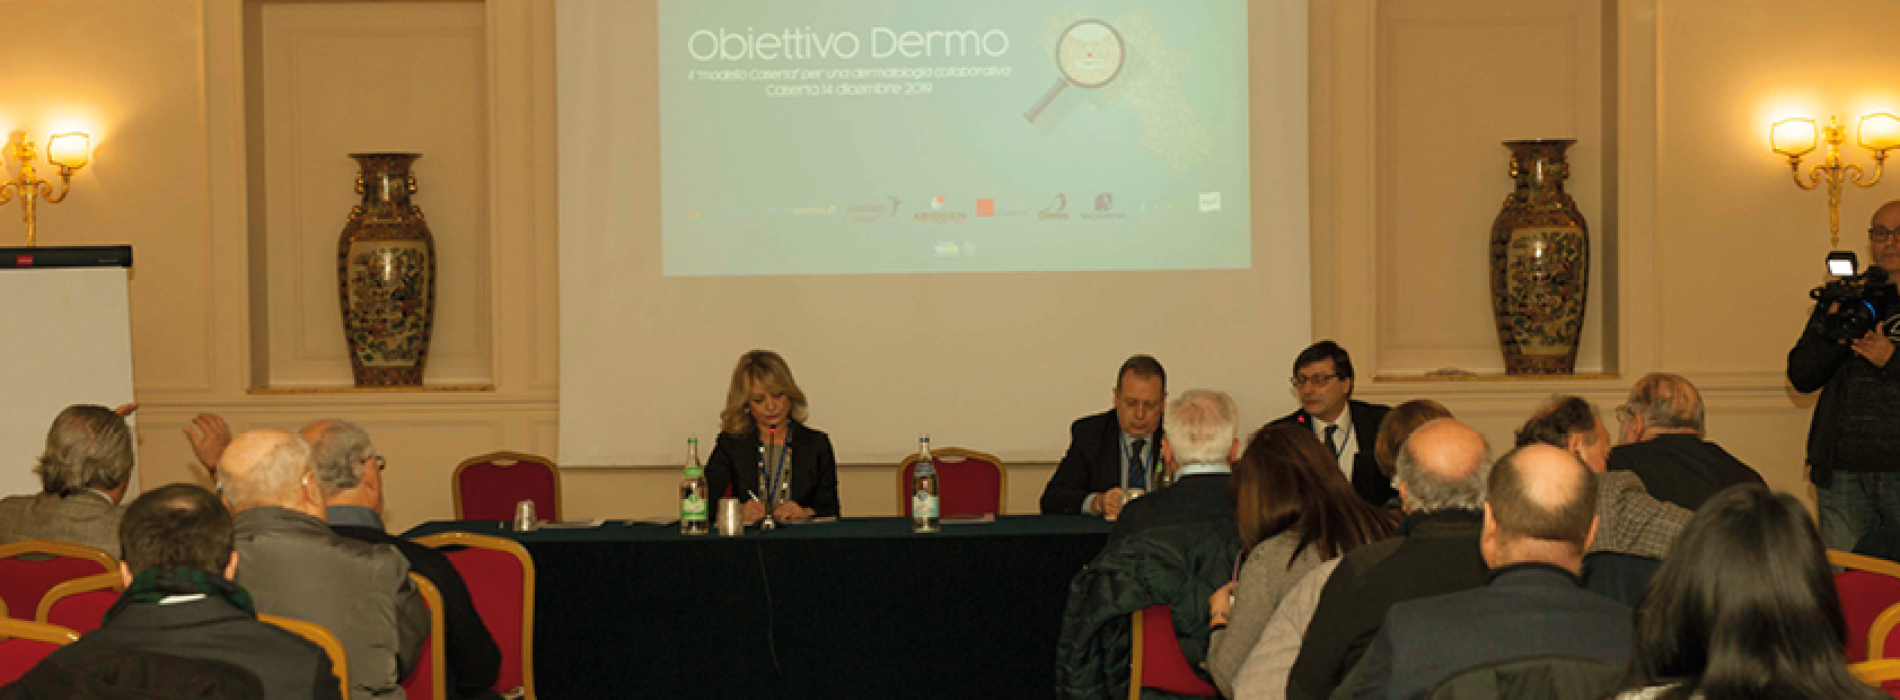 Obiettivo Derma 2019. Convegno di Dermatologia – Foto